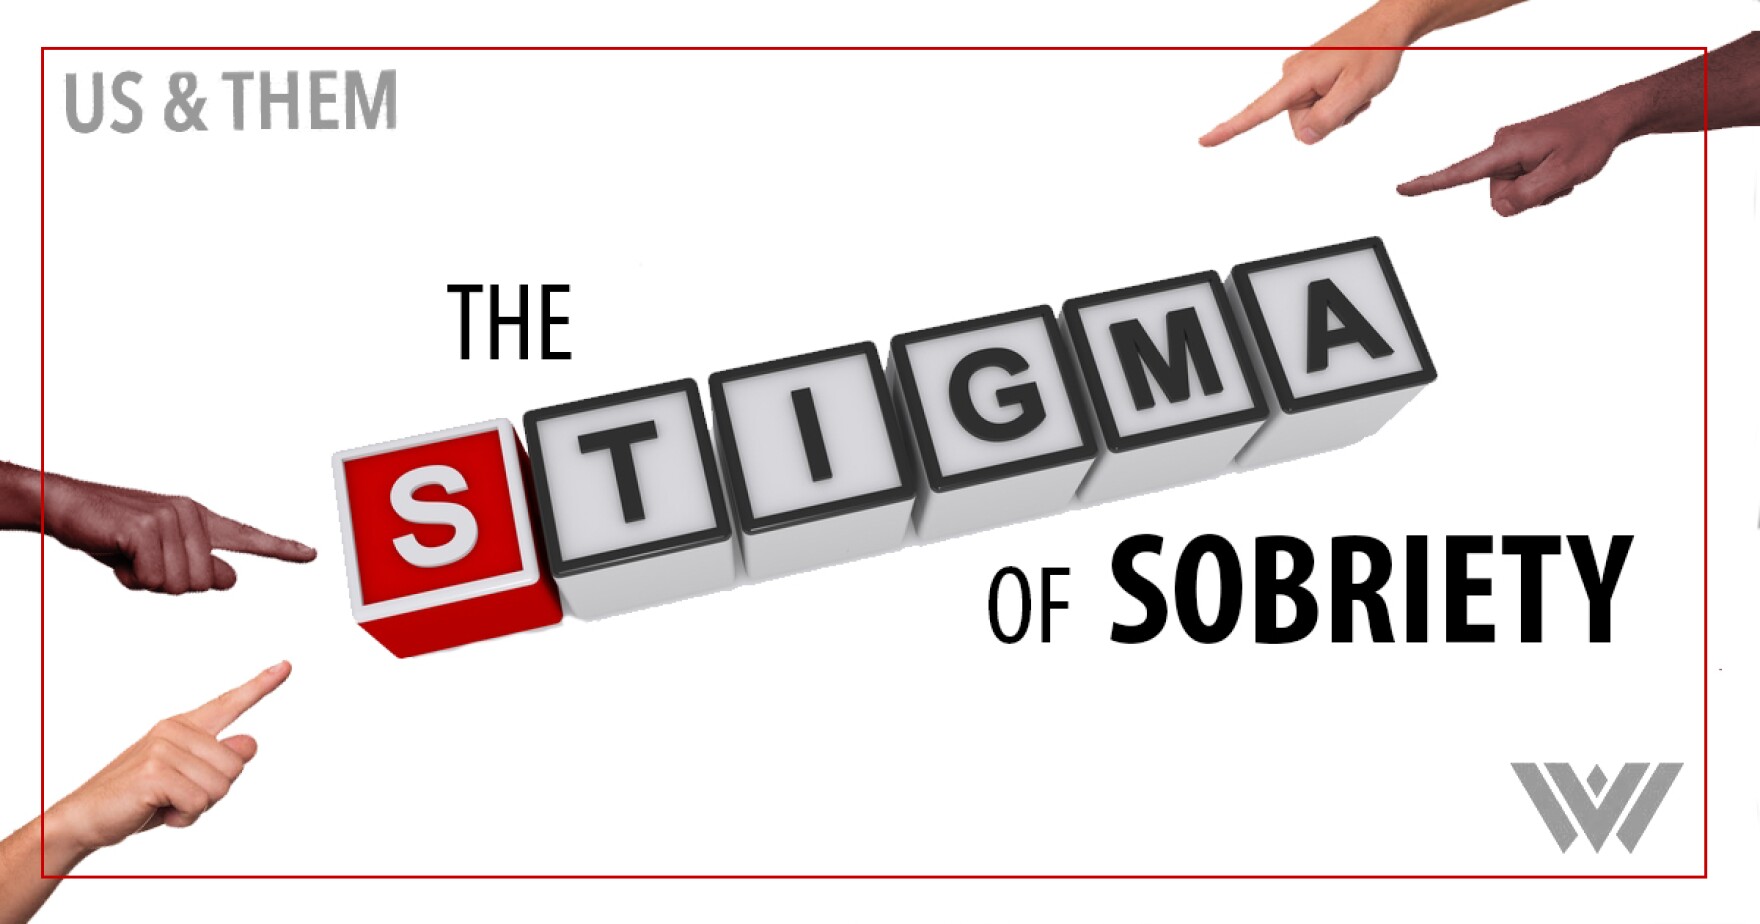 Us & Them: The Stigma of Sobriety